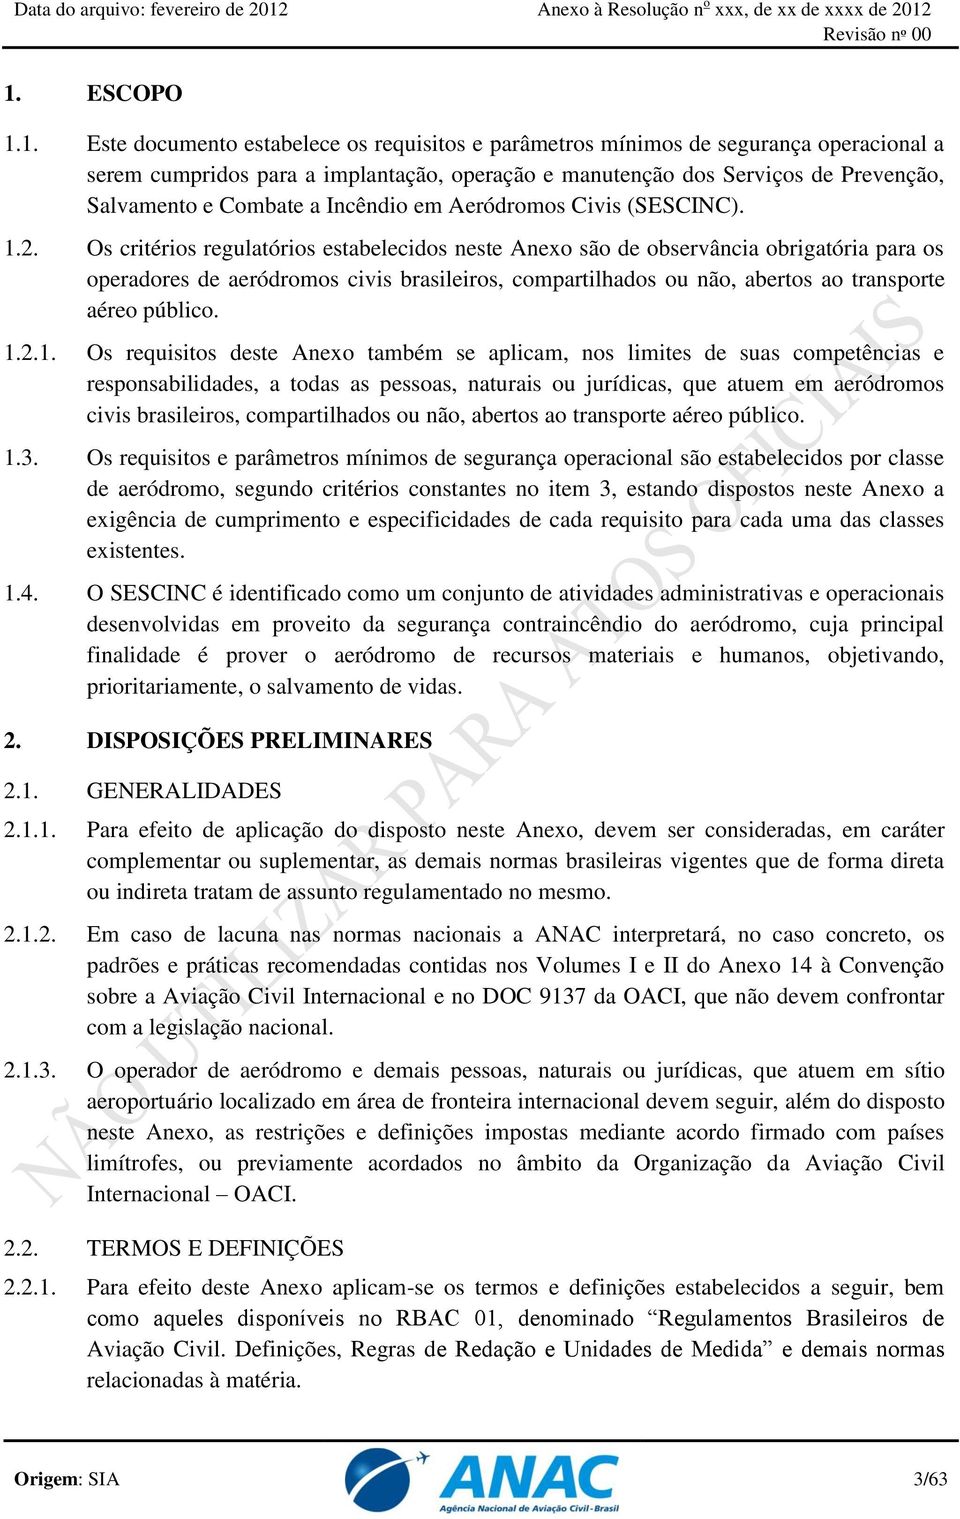 Os critérios regulatórios estabelecidos neste Anexo são de observância obrigatória para os operadores de aeródromos civis brasileiros, compartilhados ou não, abertos ao transporte aéreo público. 1.2.